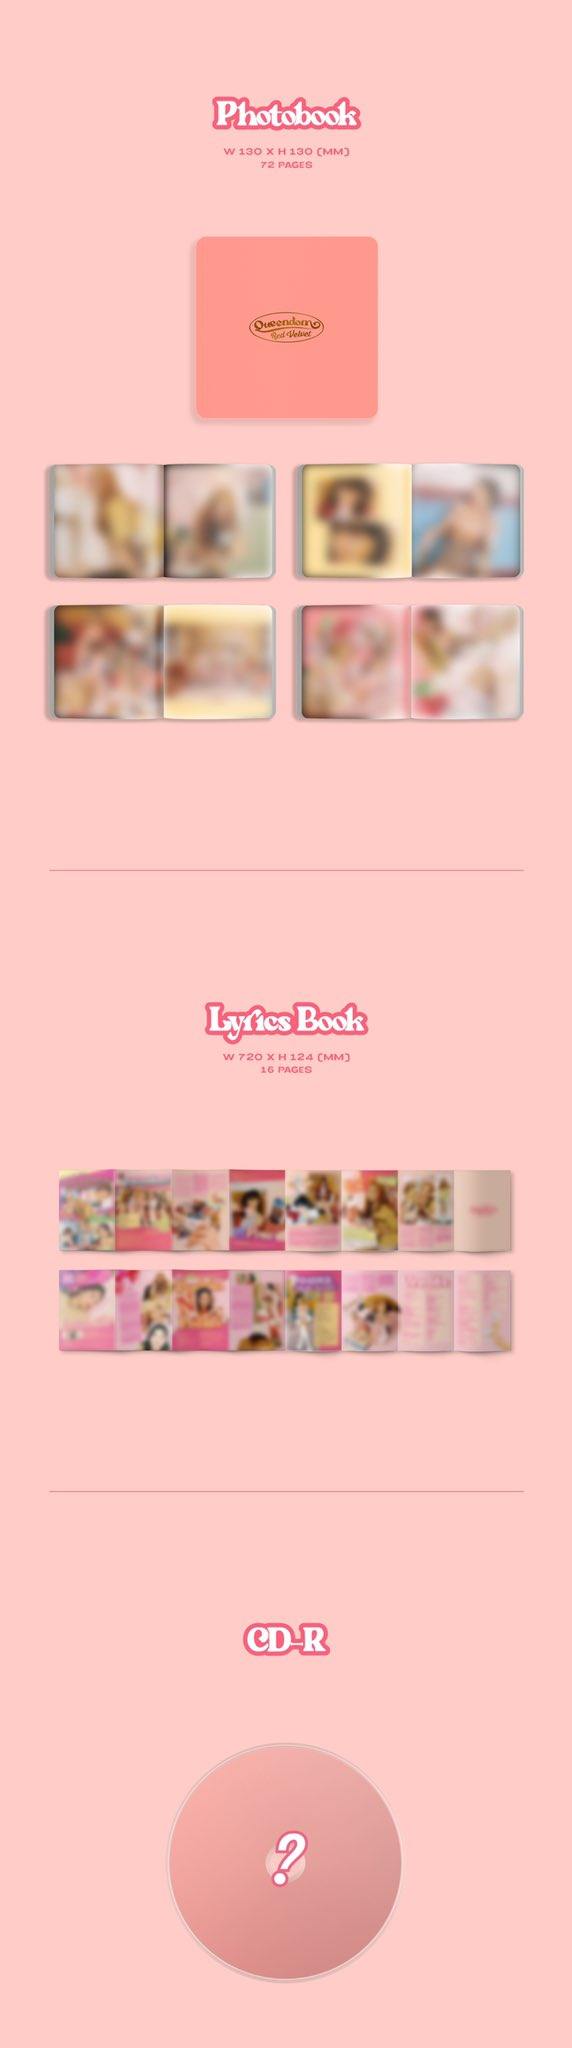 Red Velvet - Queendom (6th Mini Album) - J-Store Online